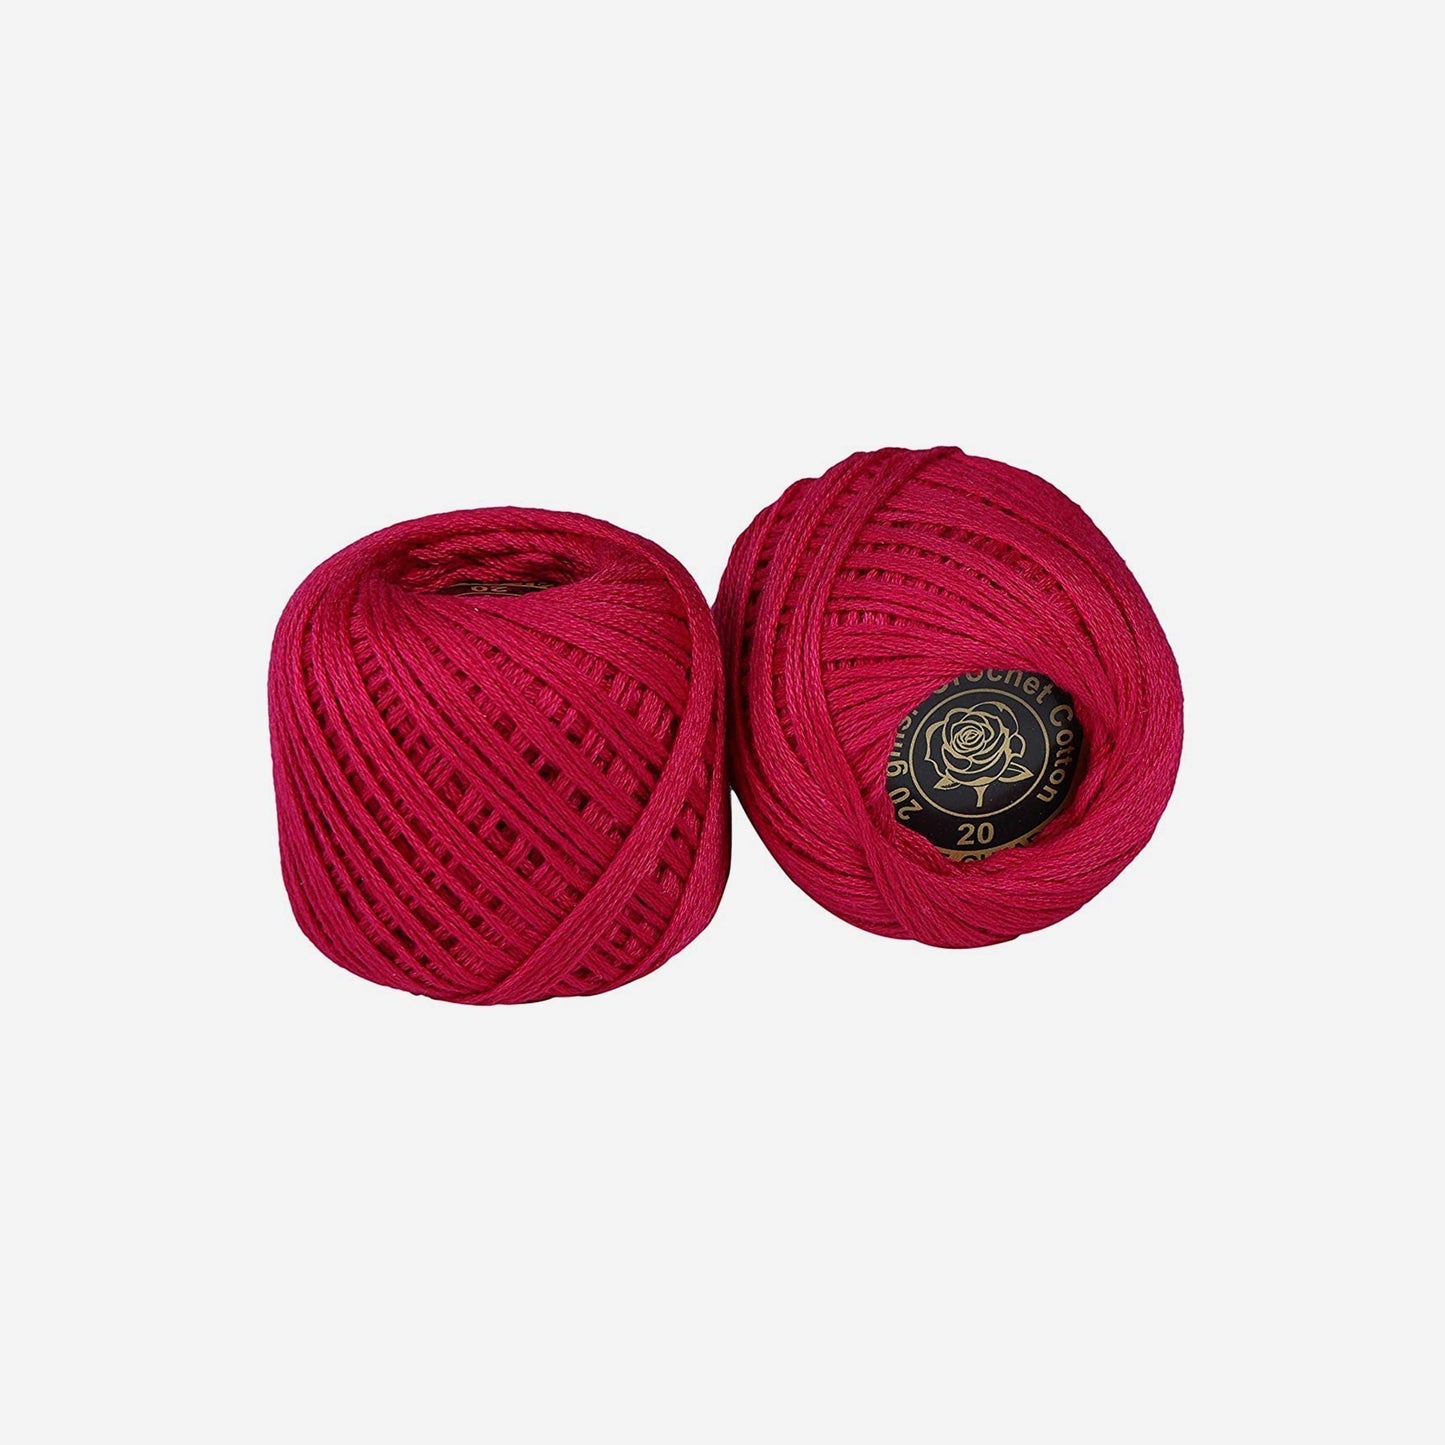 Hand-crochet hoops (Variation 12)